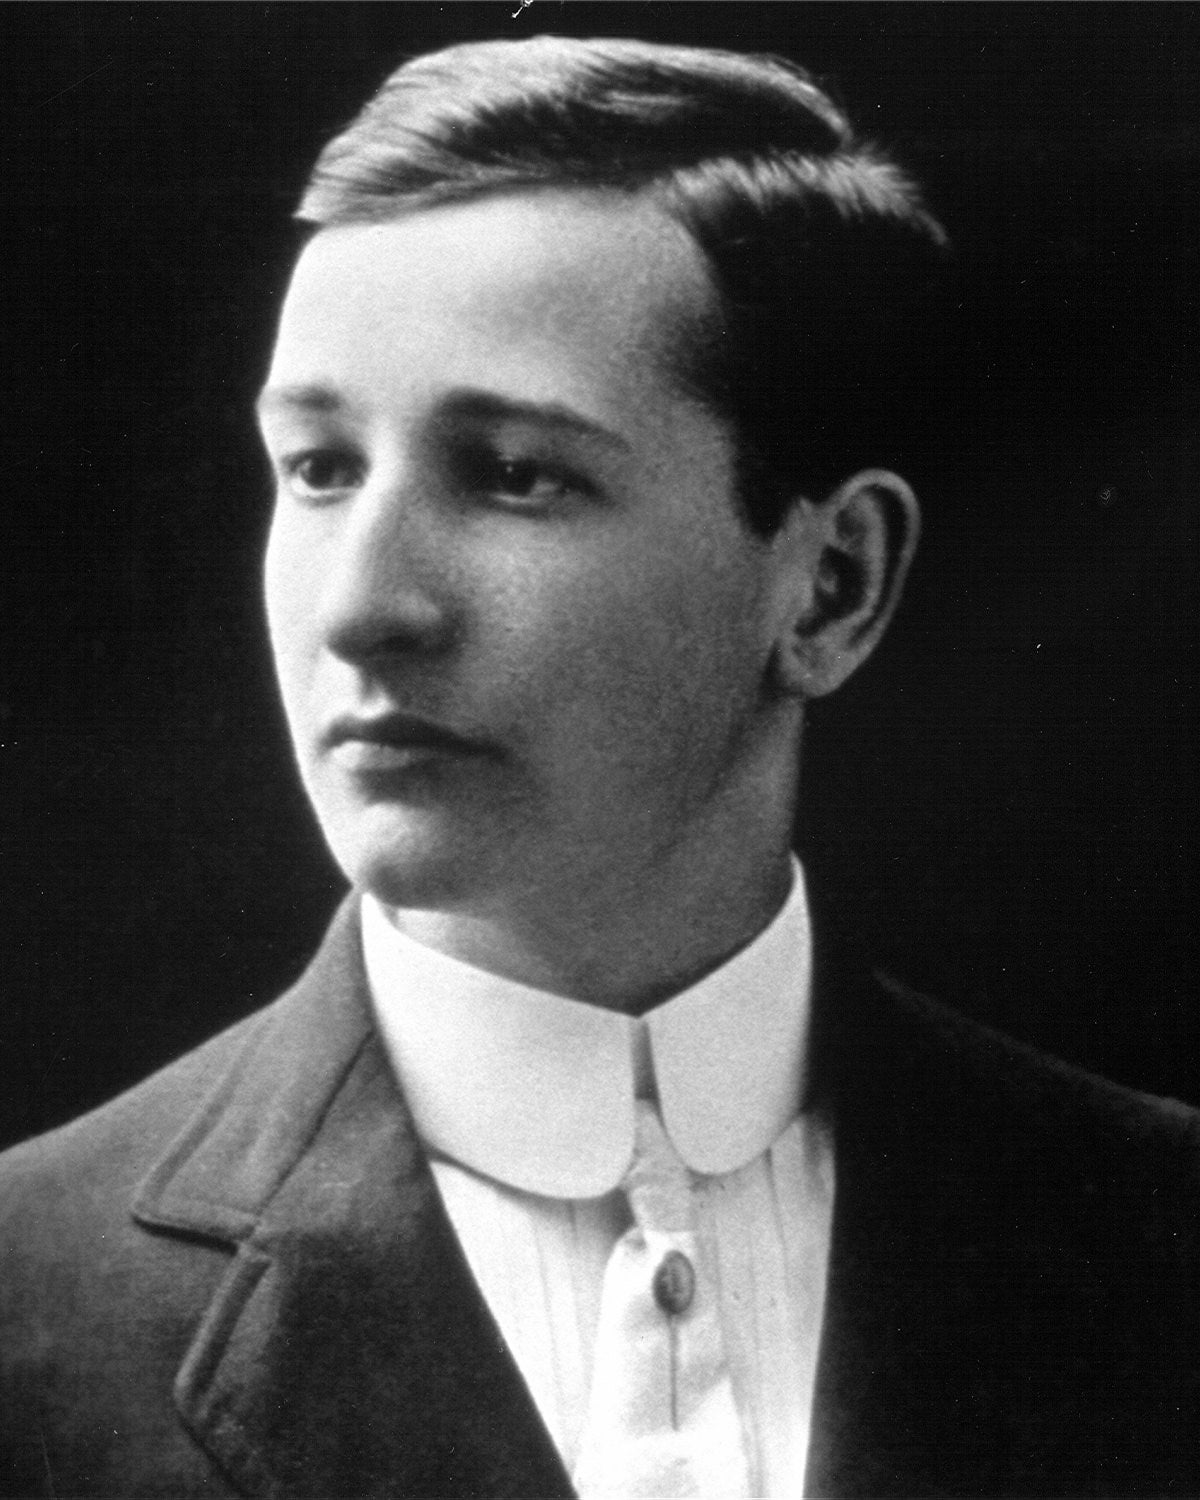 A young D.J. De Pree, 1909.